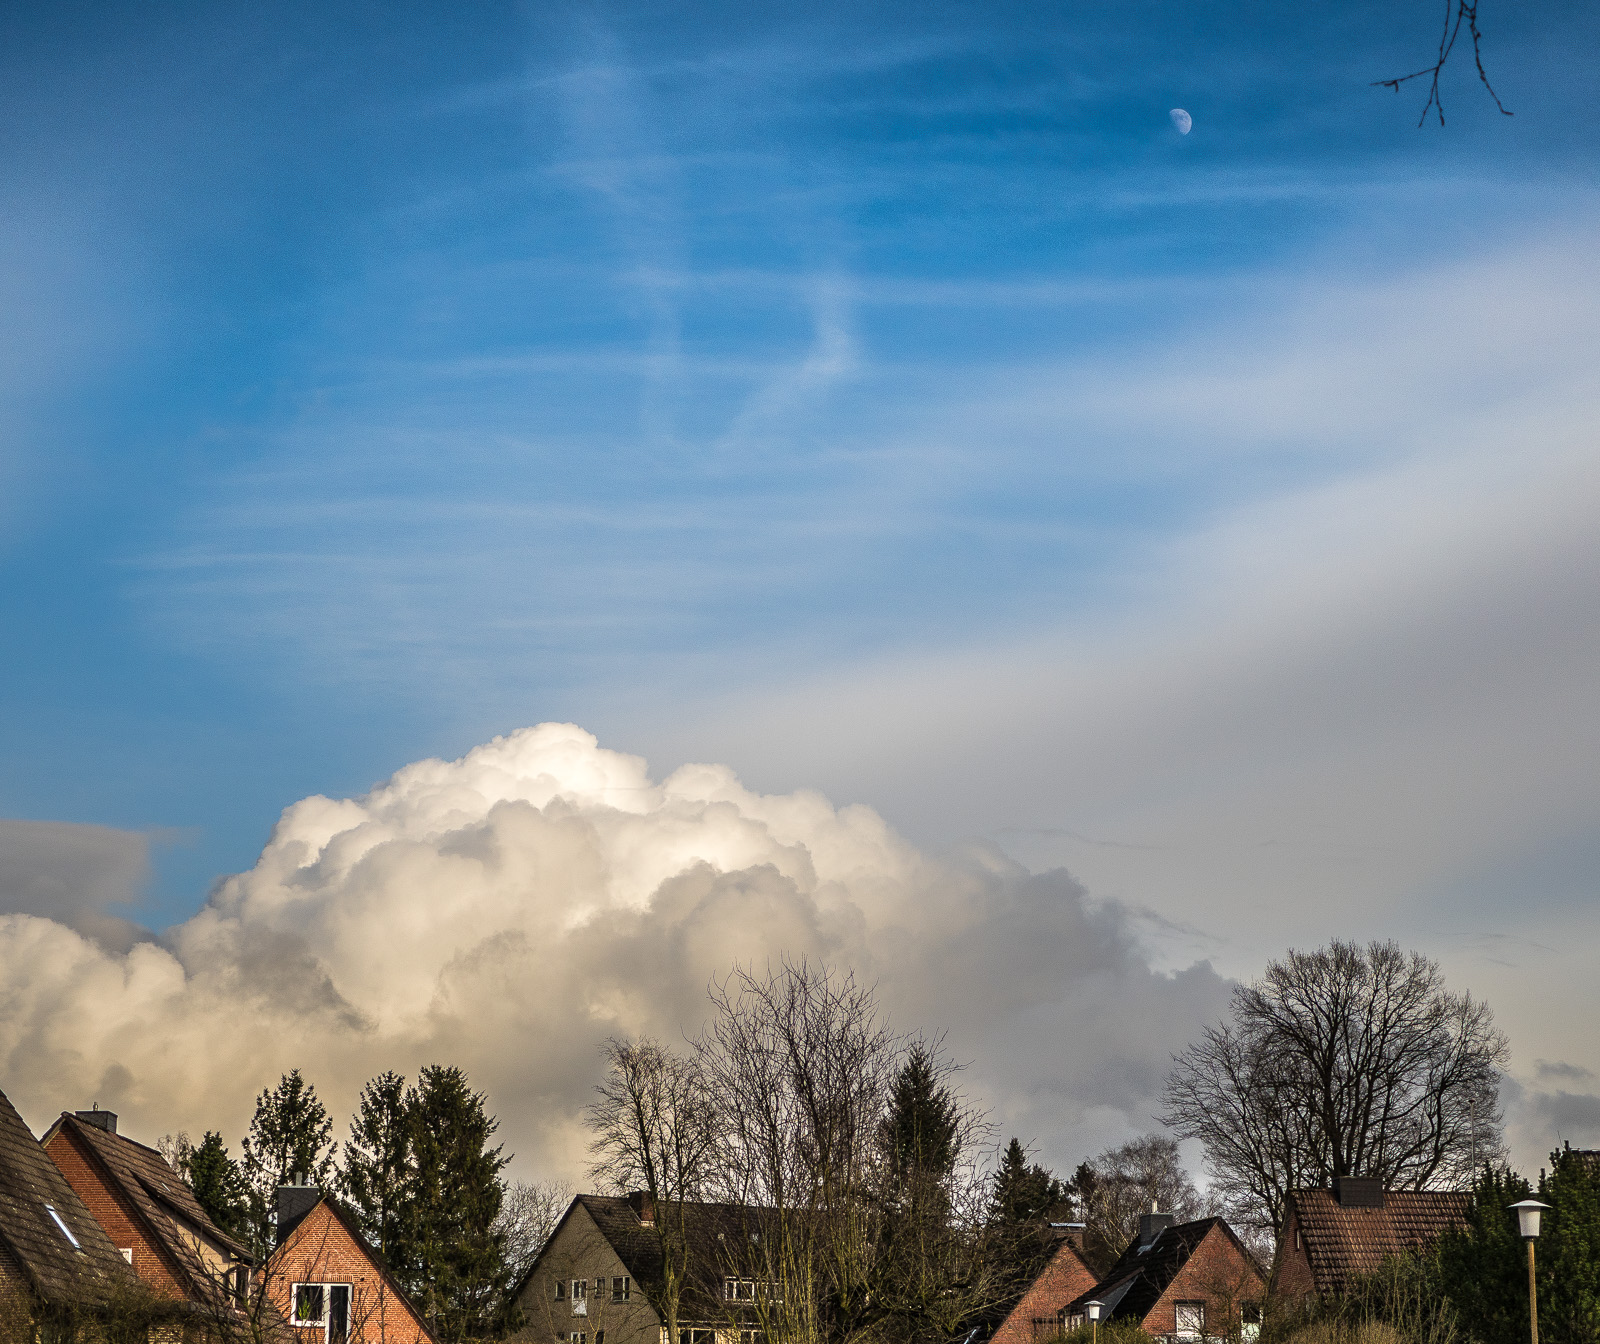 Mächtige sonnenbeschienene Wolke unter blauem Himmel, über kleinen Siedlungshäusern. Oben rechts im Bild der halbe zunehmende Mond, daneben ragt ein Ast ins Bild.